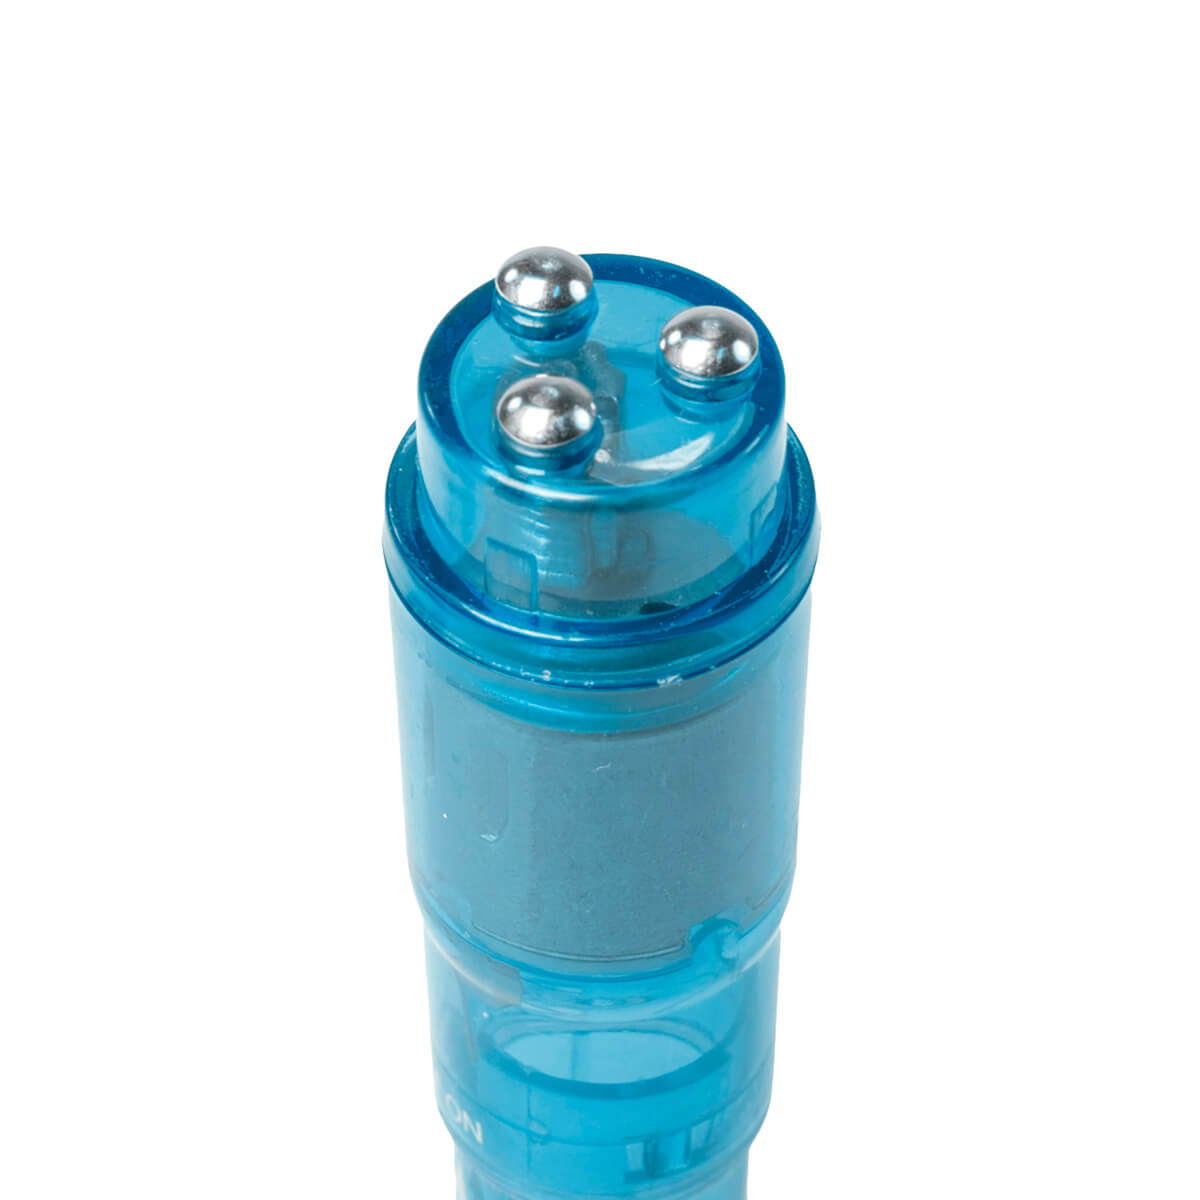 Easytoys Pocket Rocket - vibrátoros szett - kék (5 részes) Kicsi vibrátor kép